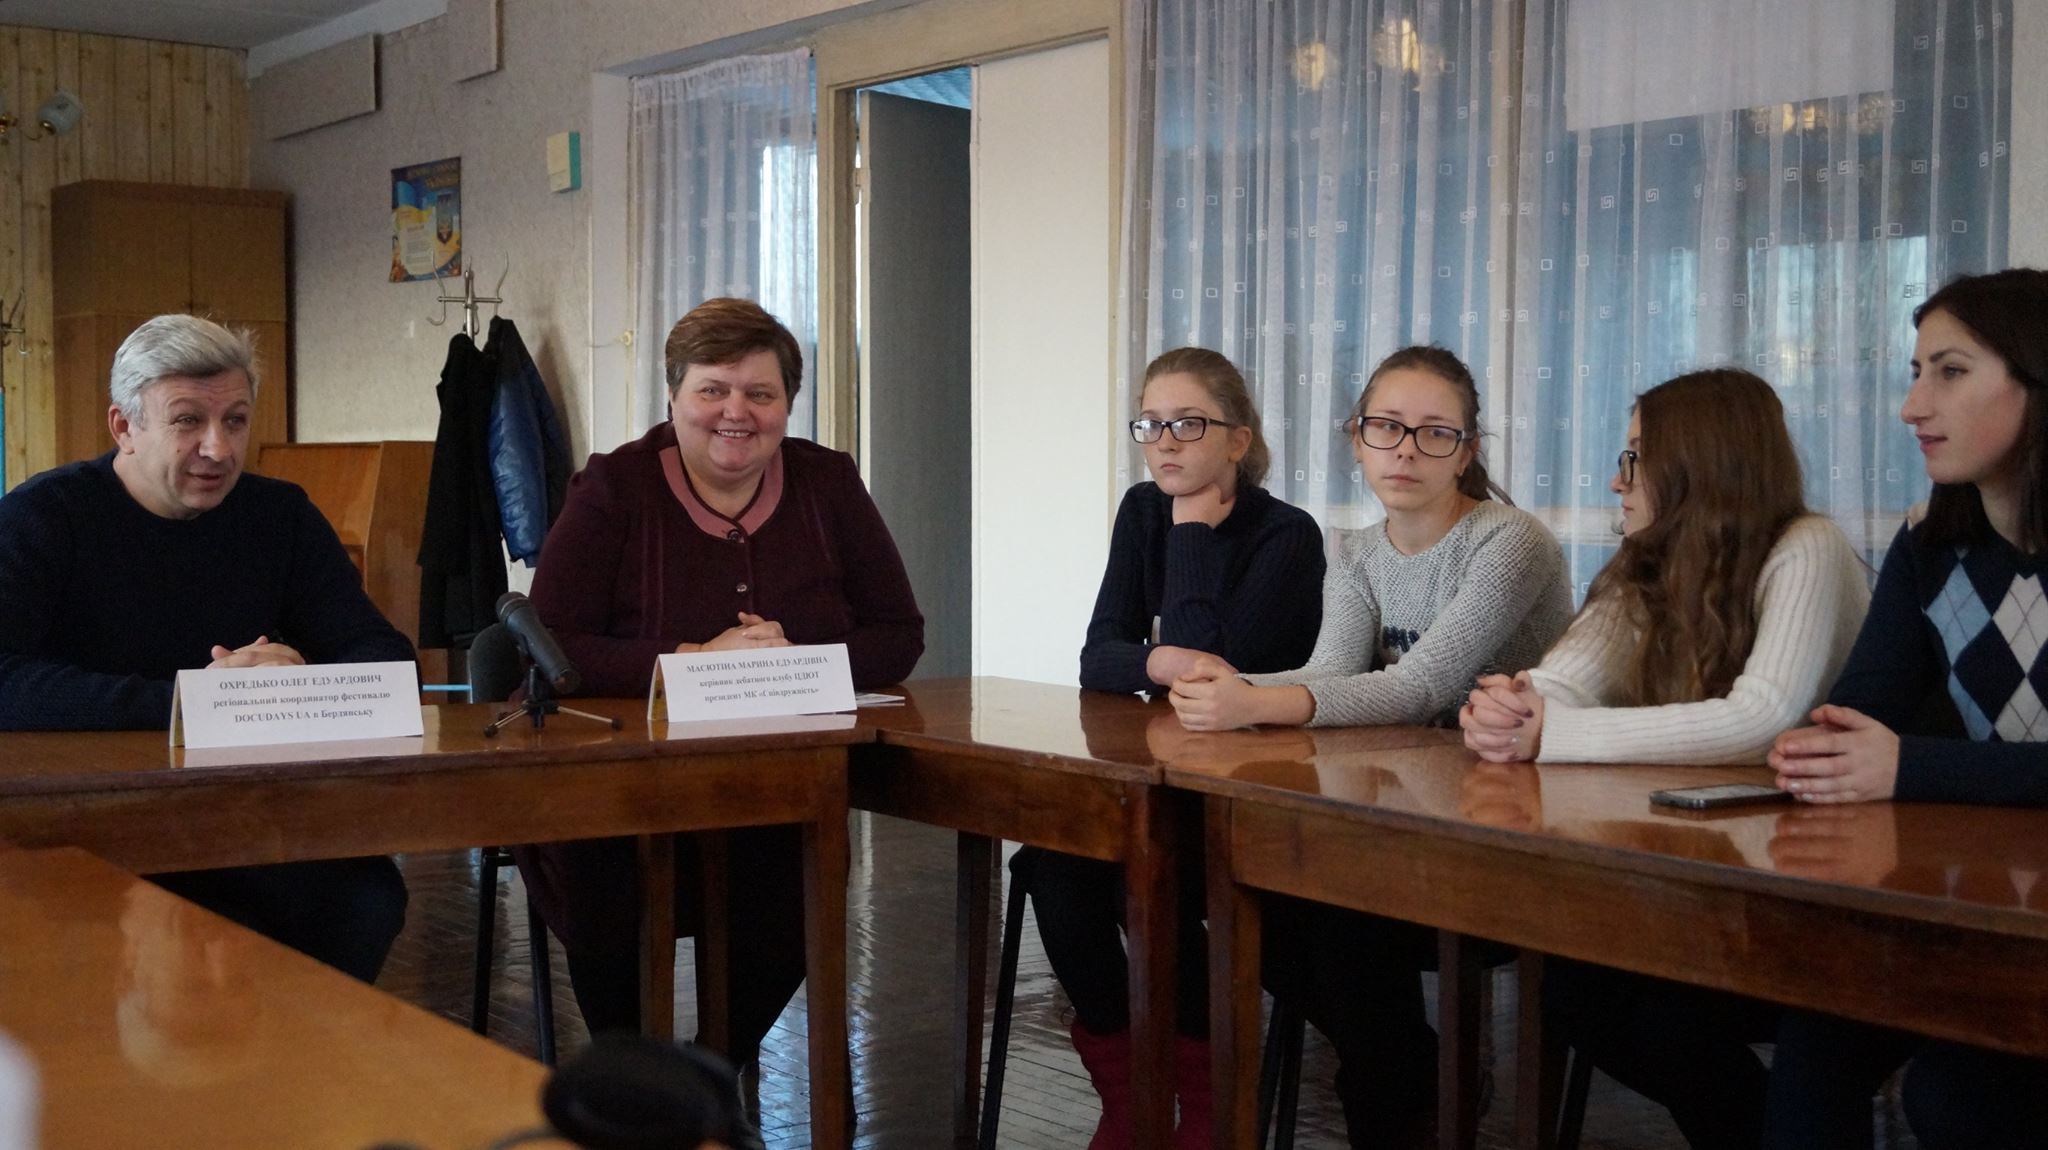 XII Путешествующий фестиваль документального кино про права человека Docudays UA прибыл в Бердянск - картинка 5